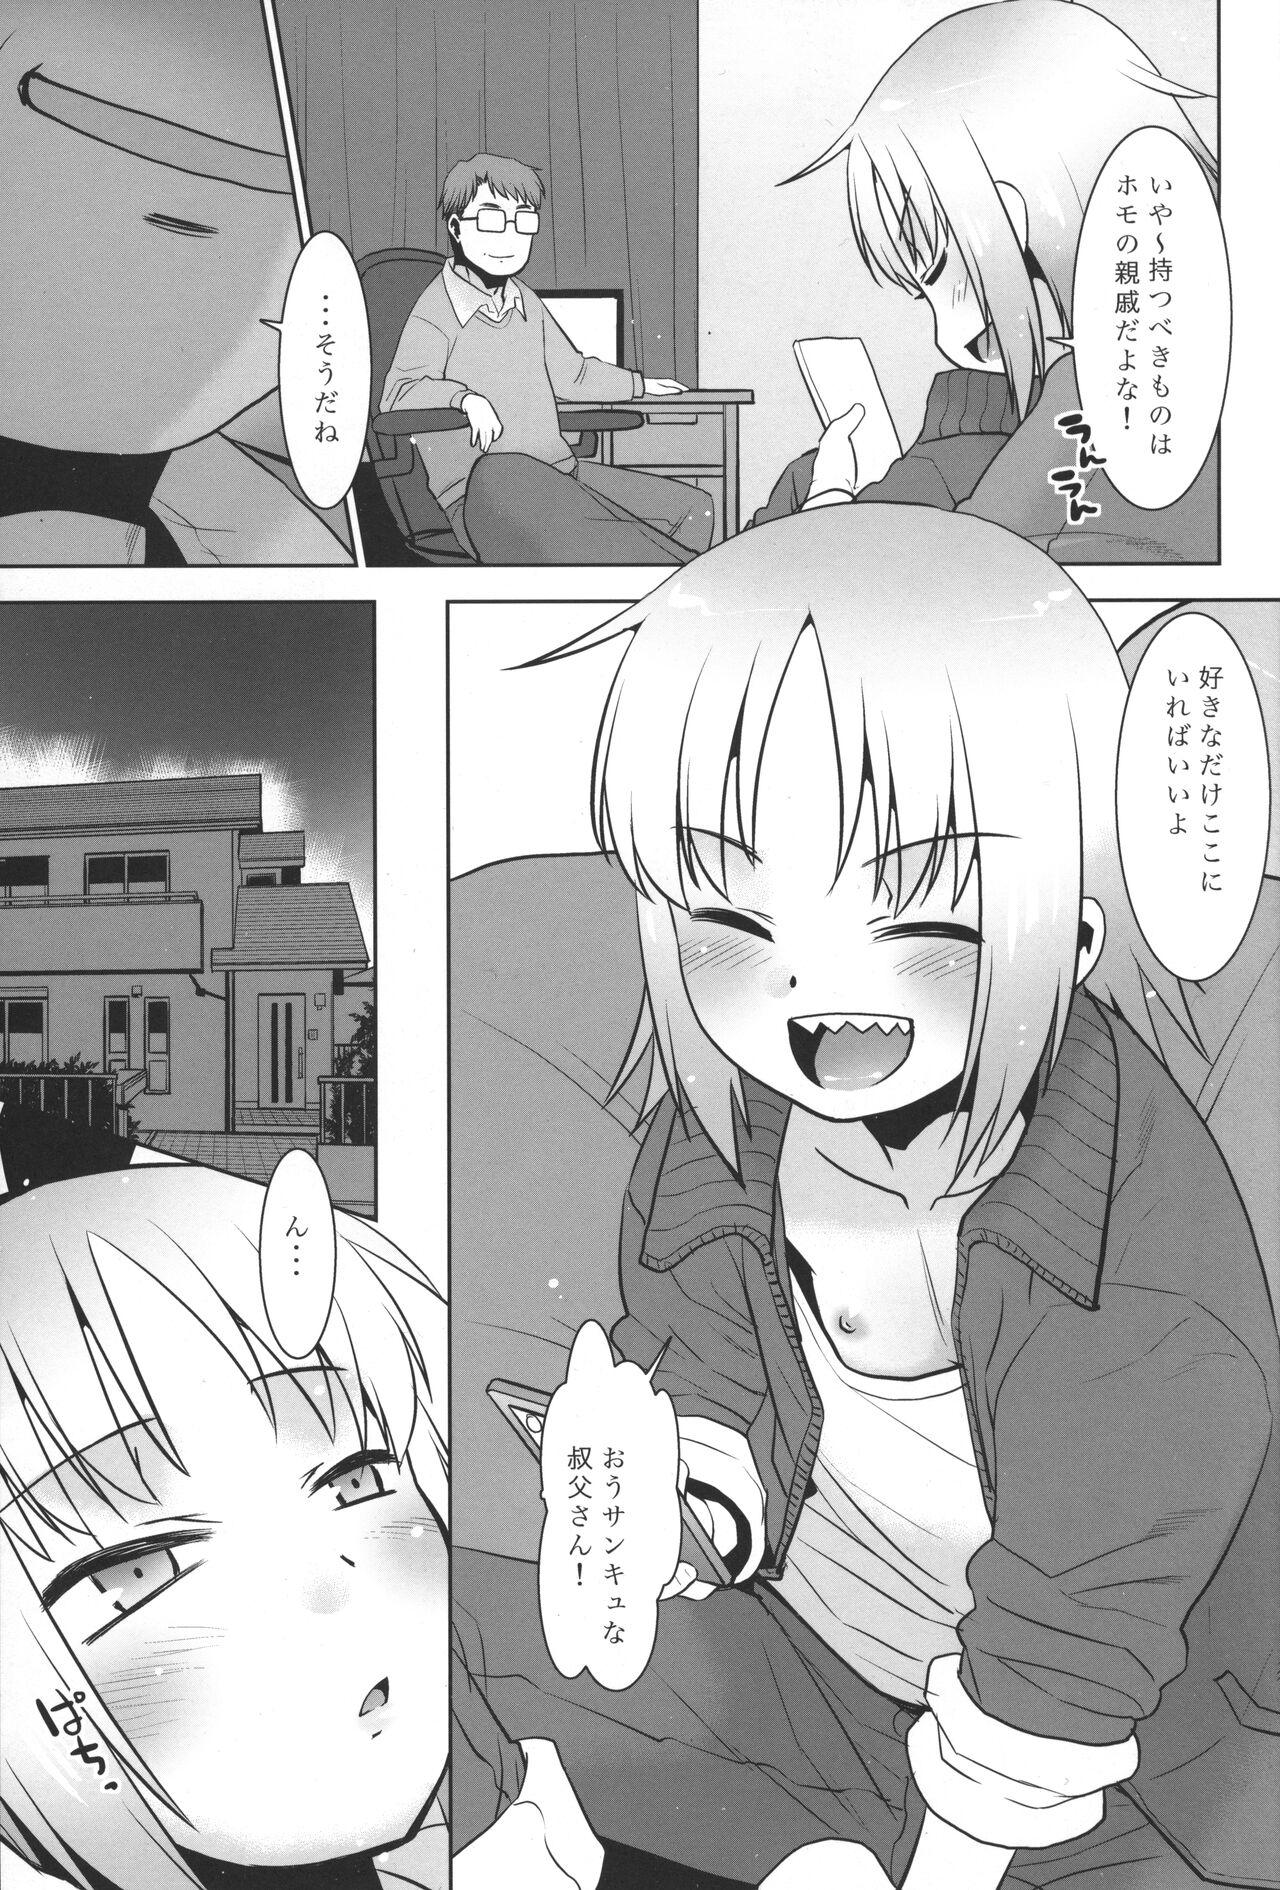 Butt Uchi no Aniki ga Onna no ko ni natta kara Minna de Mawasou ze! 2 - Original Gaypawn - Page 6